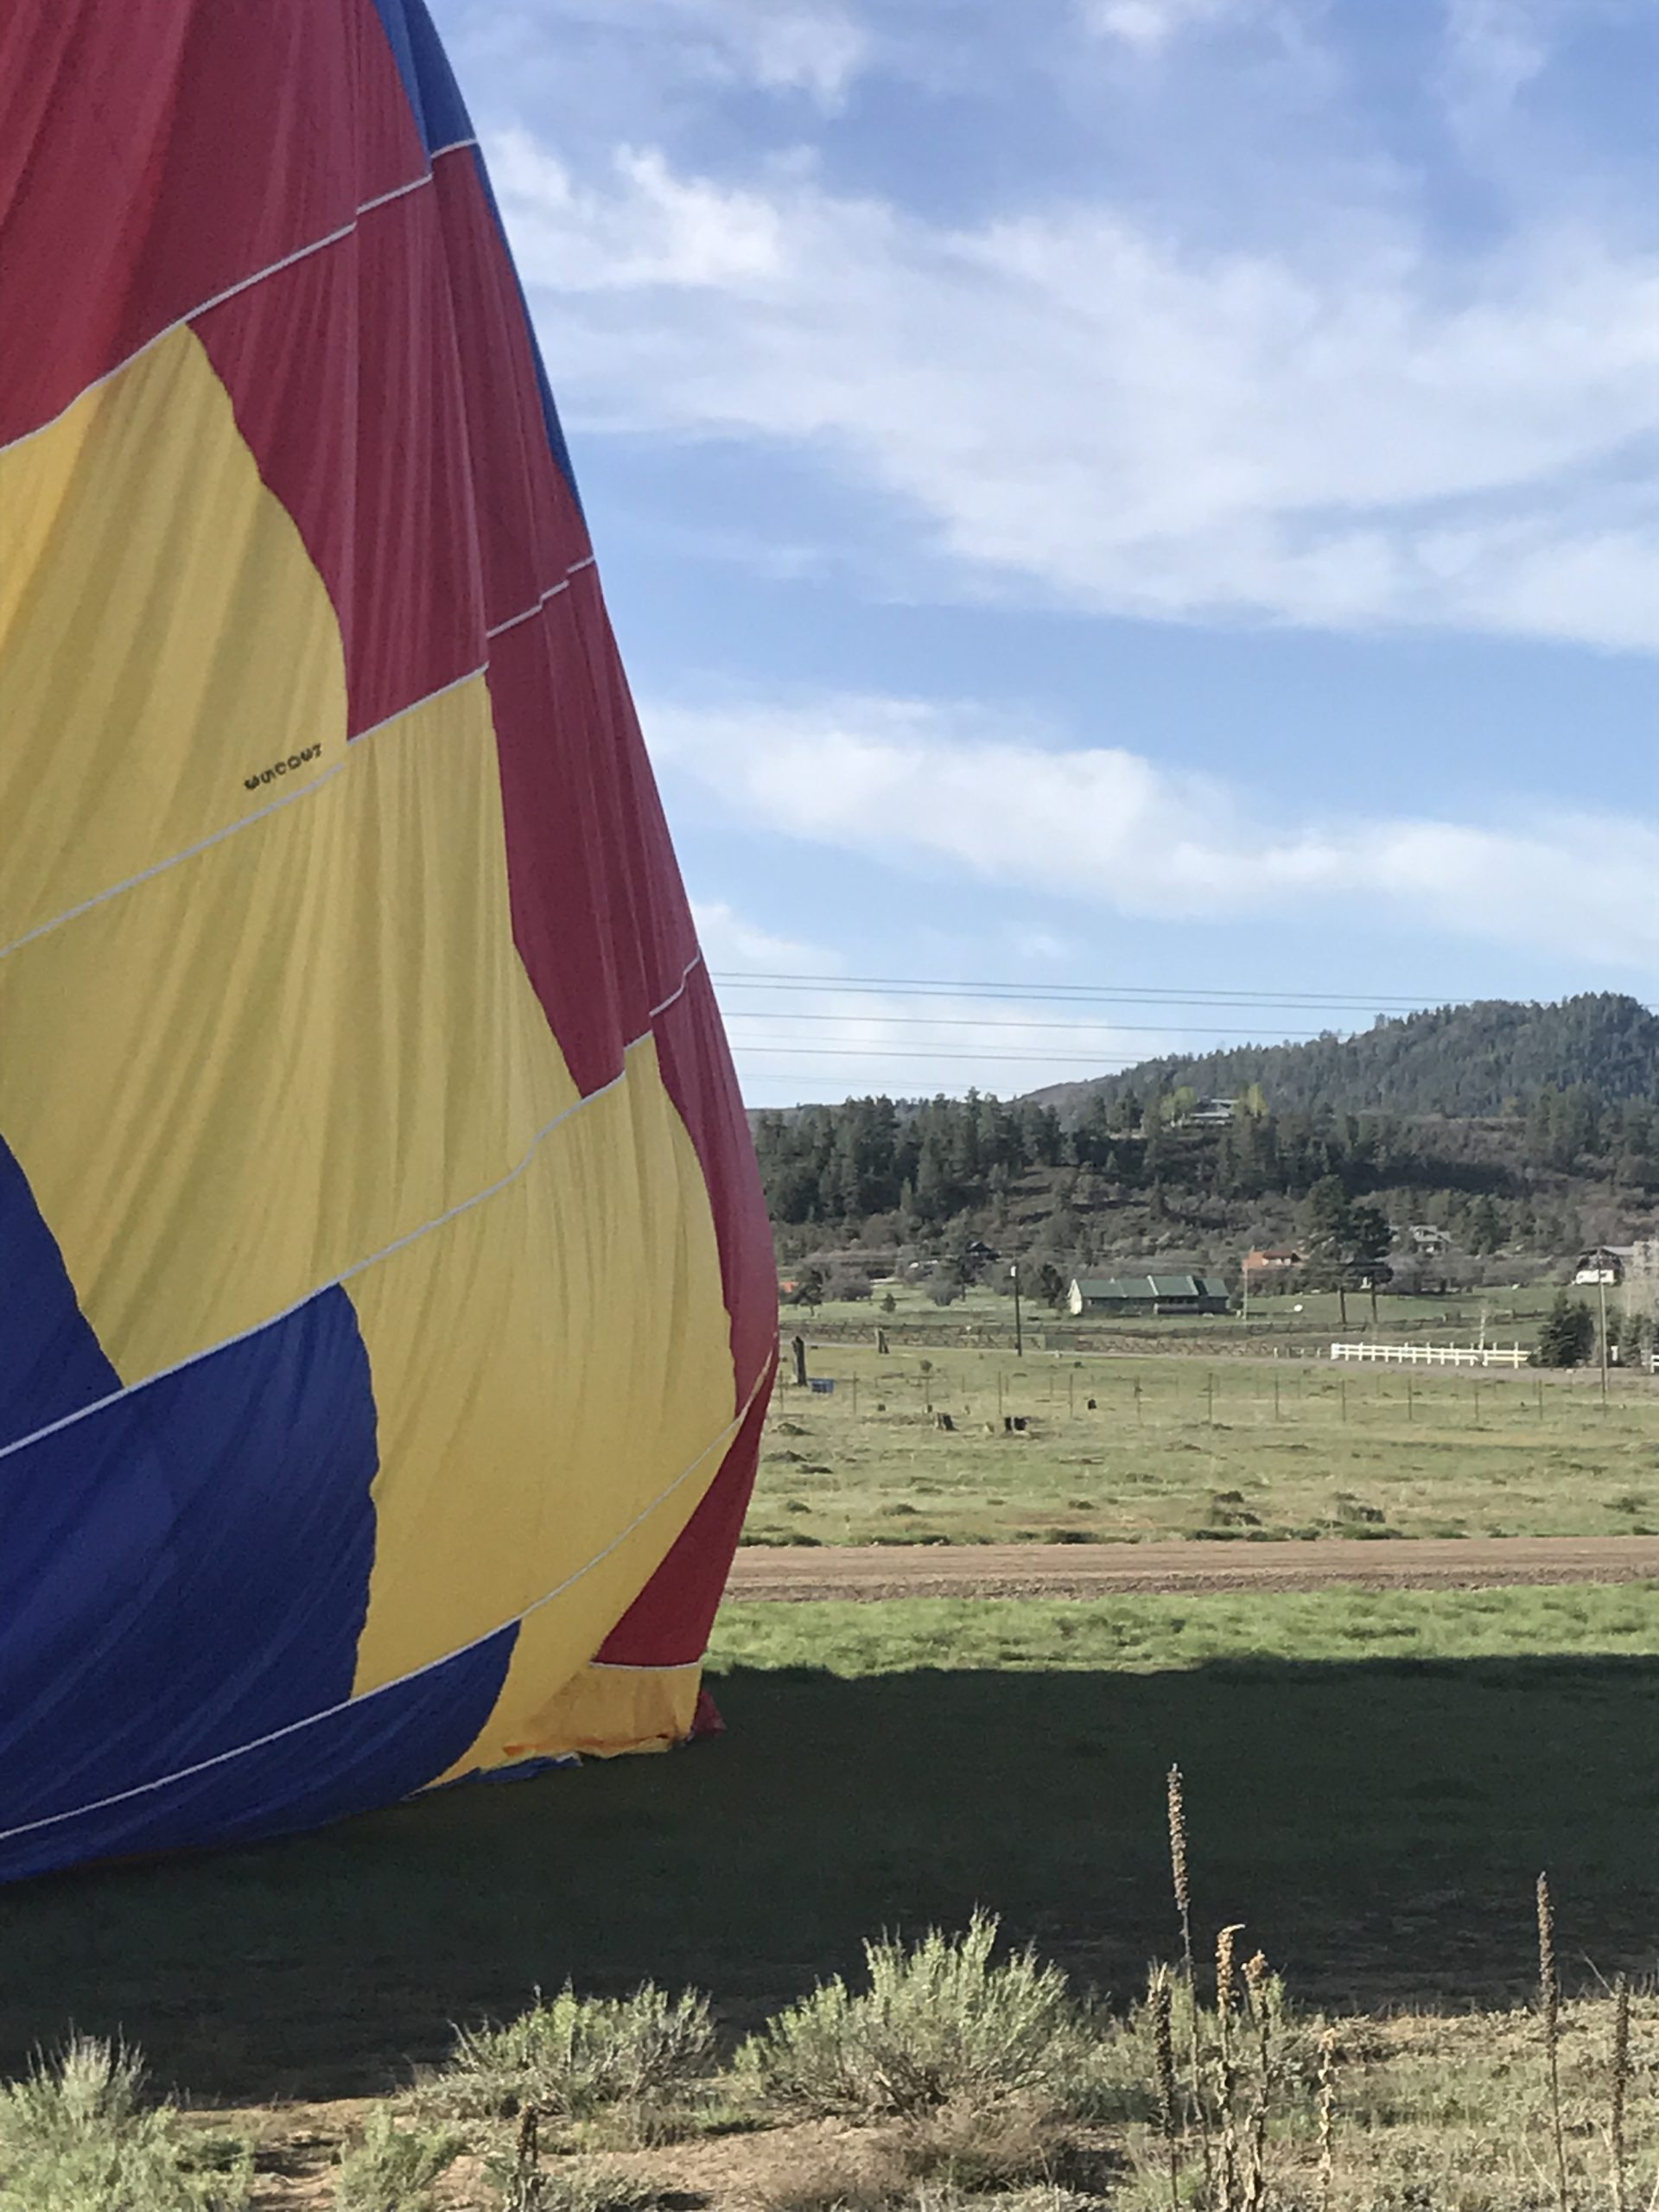 Hot Air Balloon Ride in Pagosa Springs My Pagosa Springs